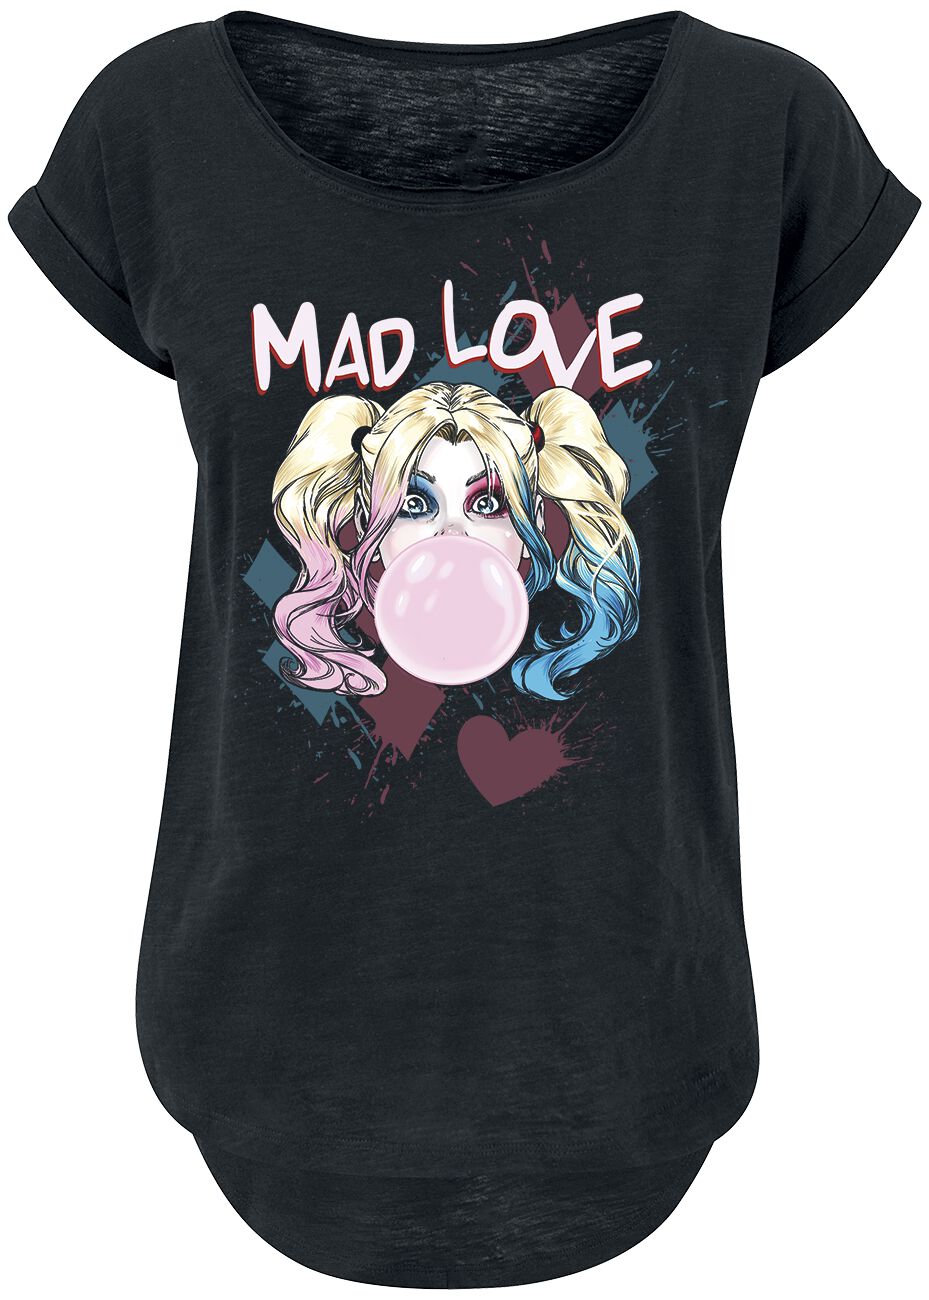 Harley Quinn - DC Comics T-Shirt - Mad Love - XS bis 3XL - für Damen - Größe S - schwarz  - EMP exklusives Merchandise!